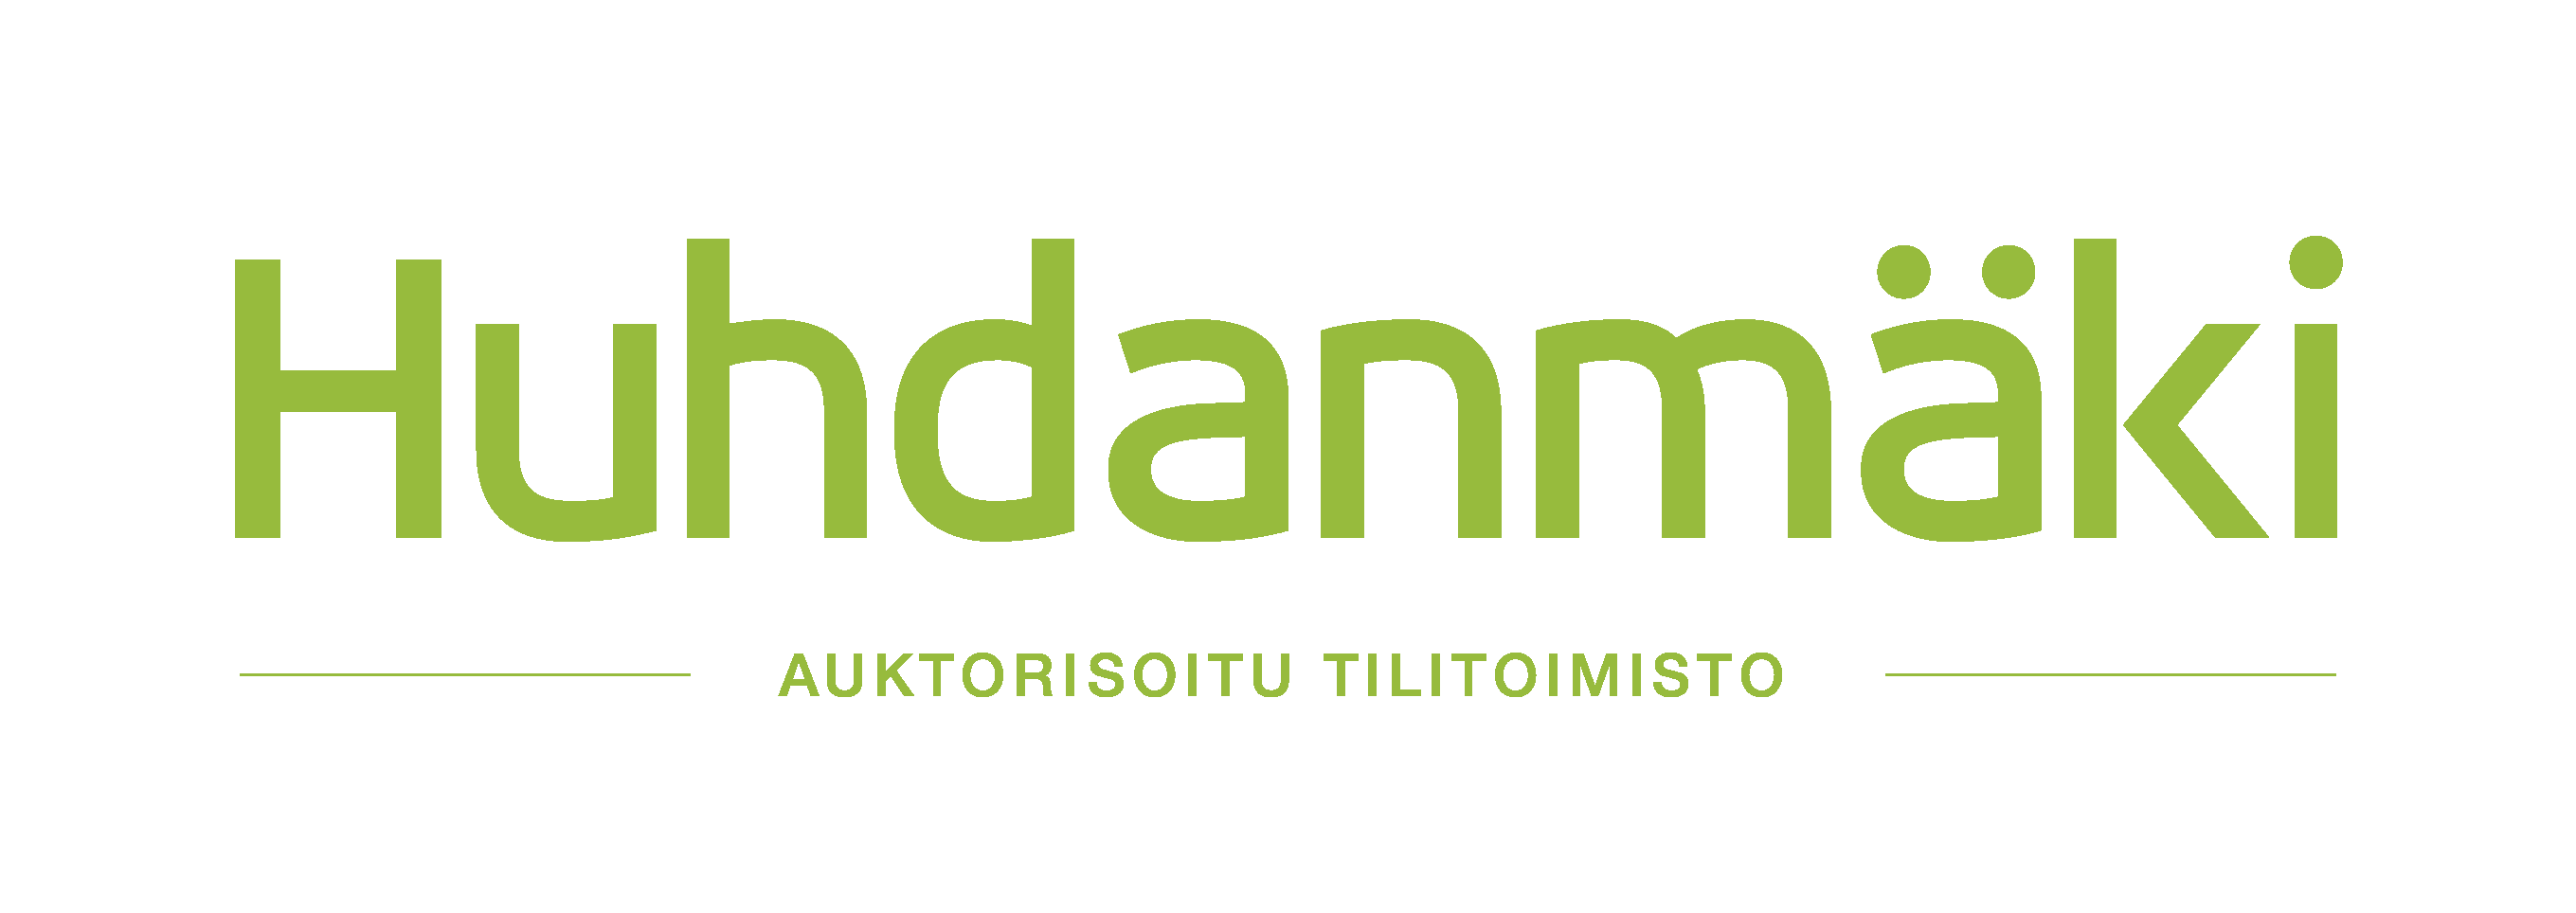 logo_koko_vihreä-1